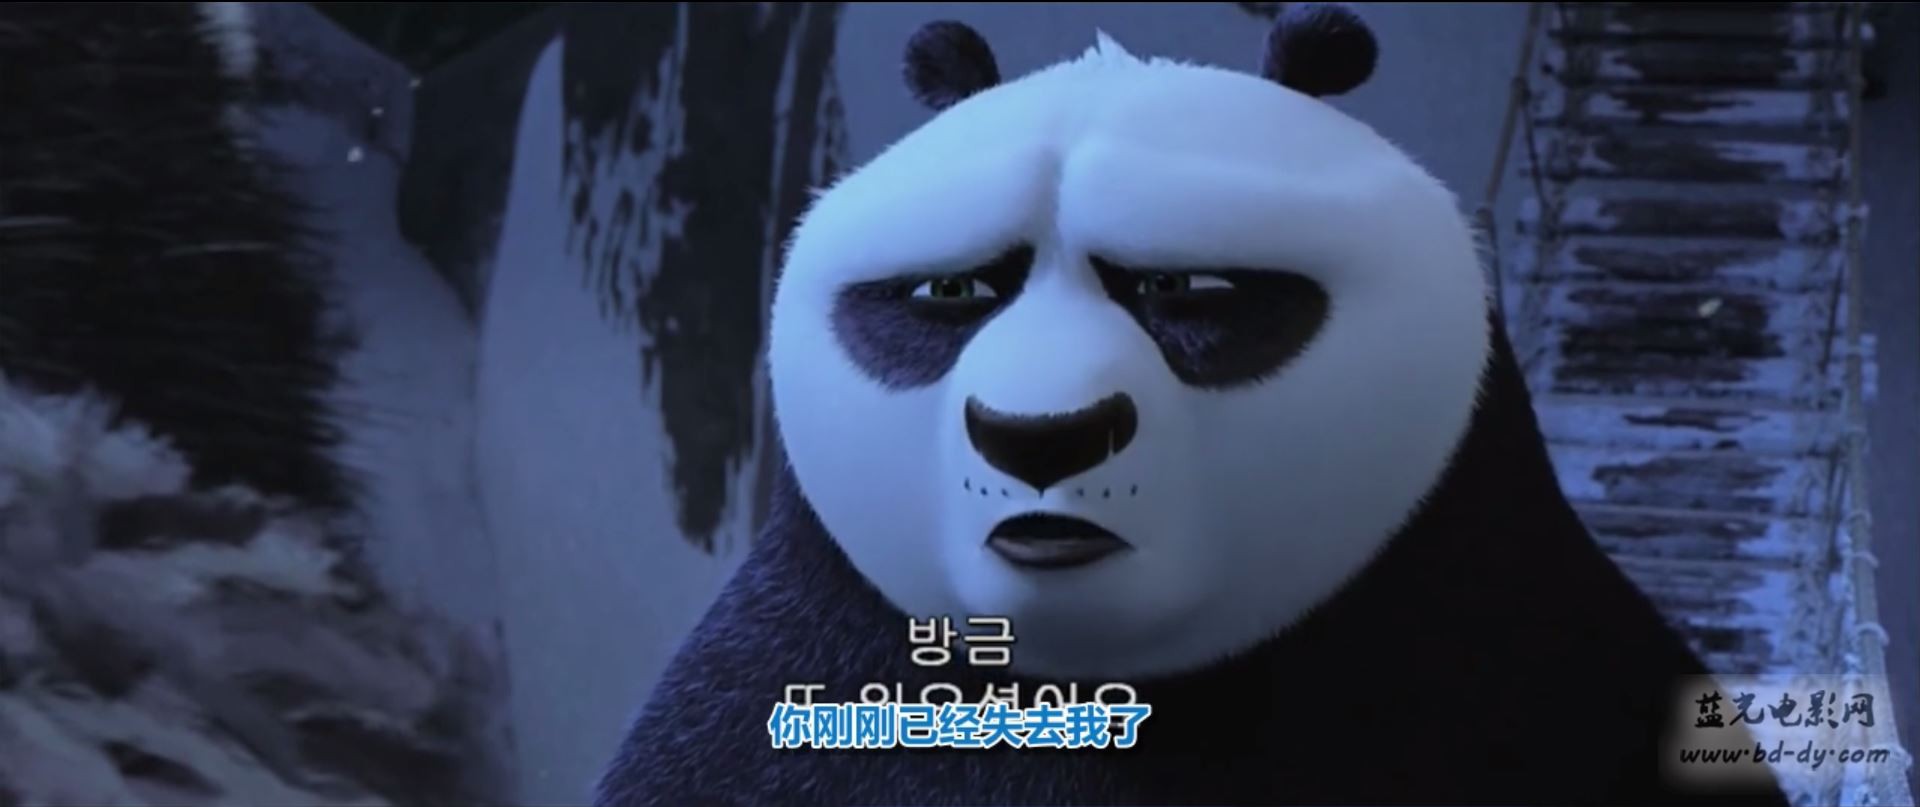 功夫熊猫3剧照